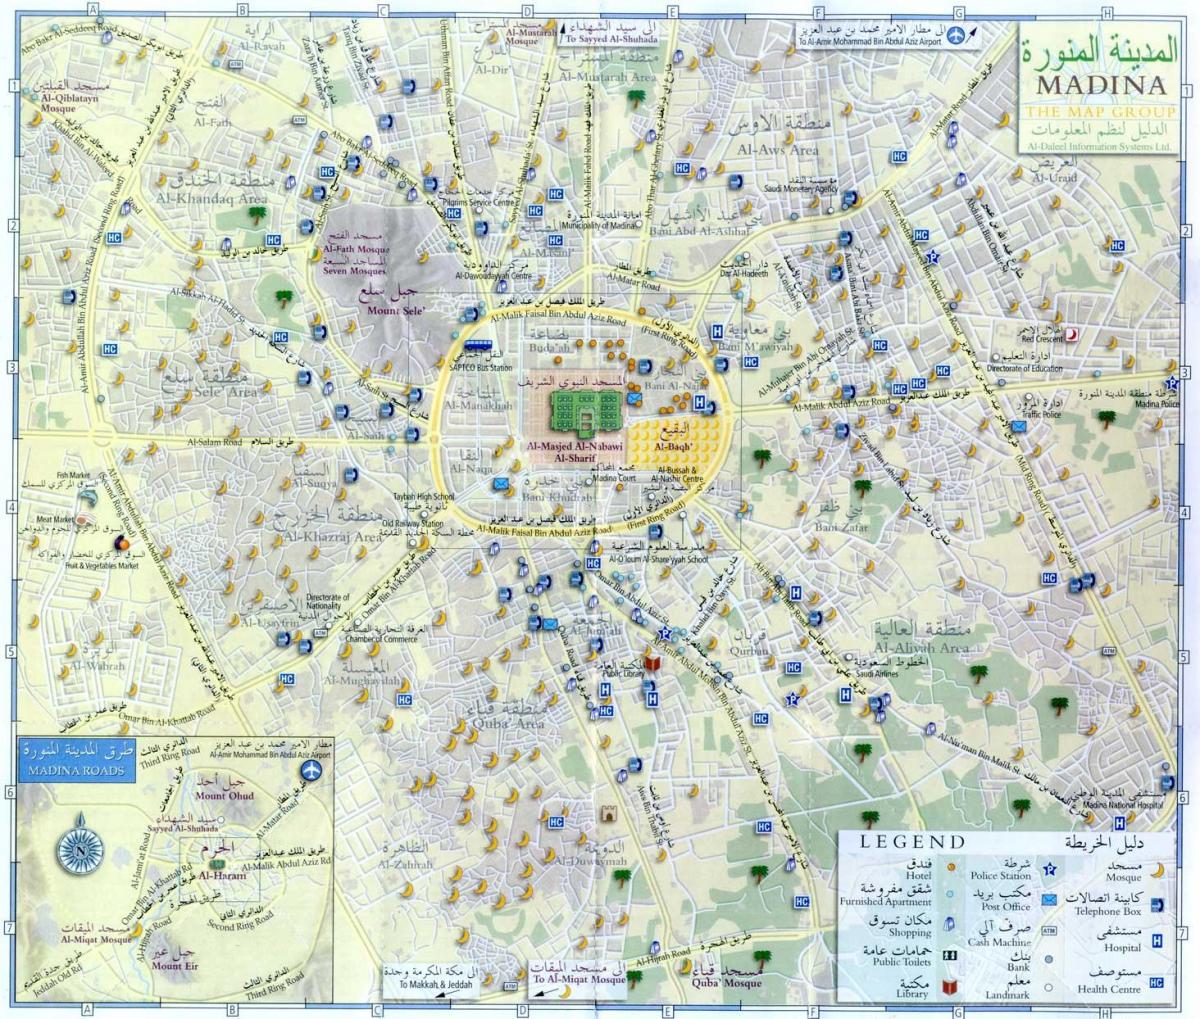 Mecca (Makkah) sightseeing map